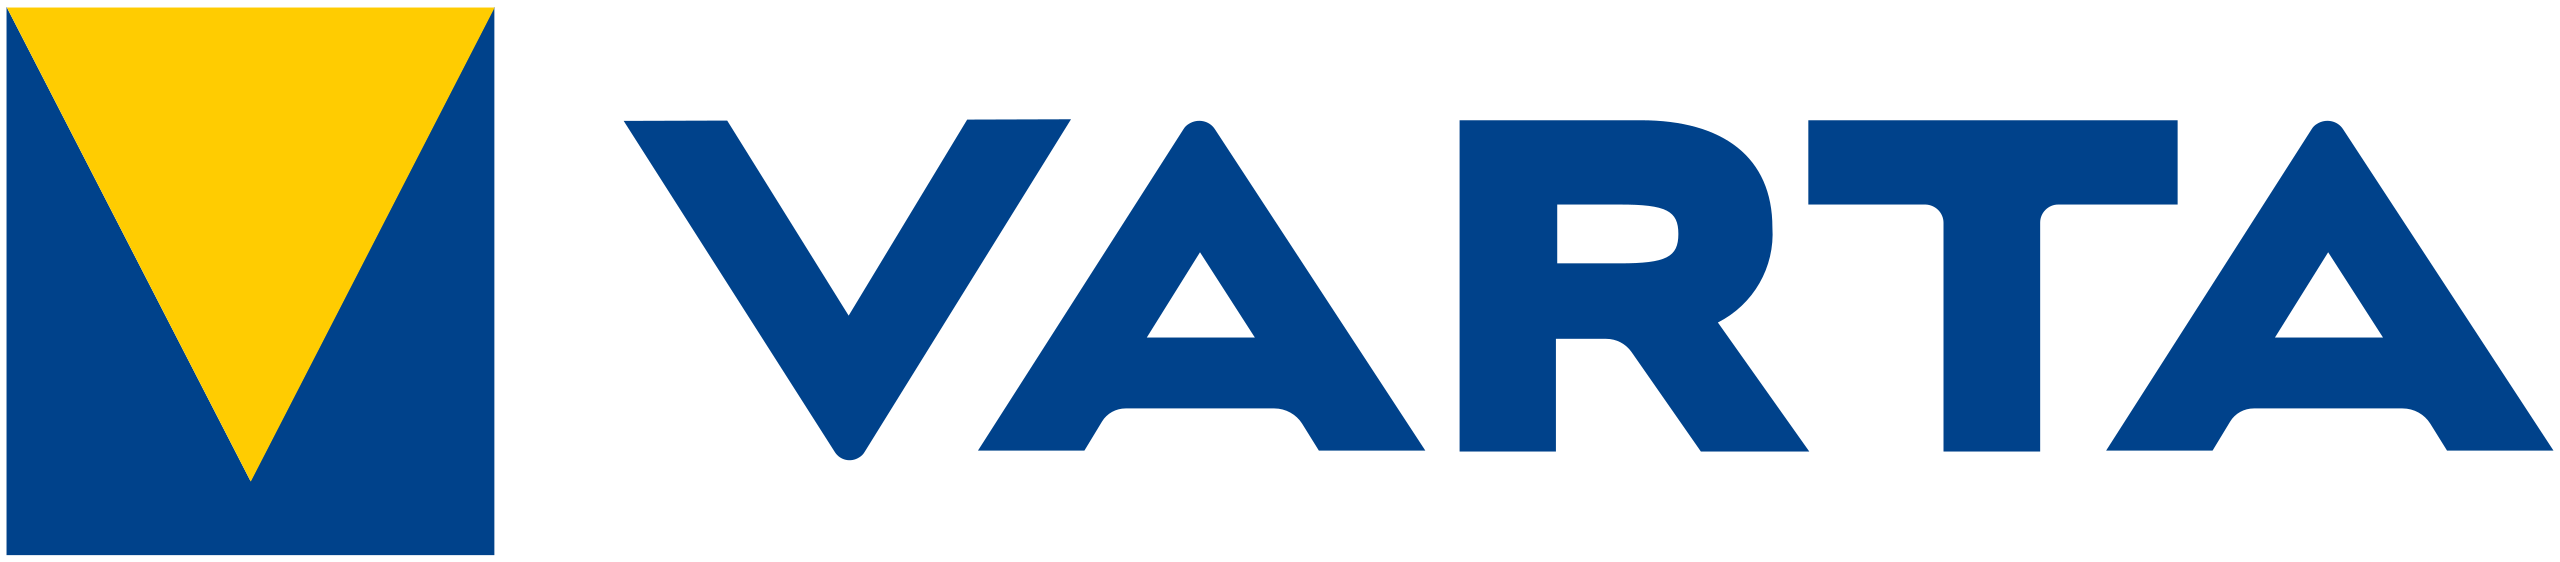 Varta-logo-2021.svg